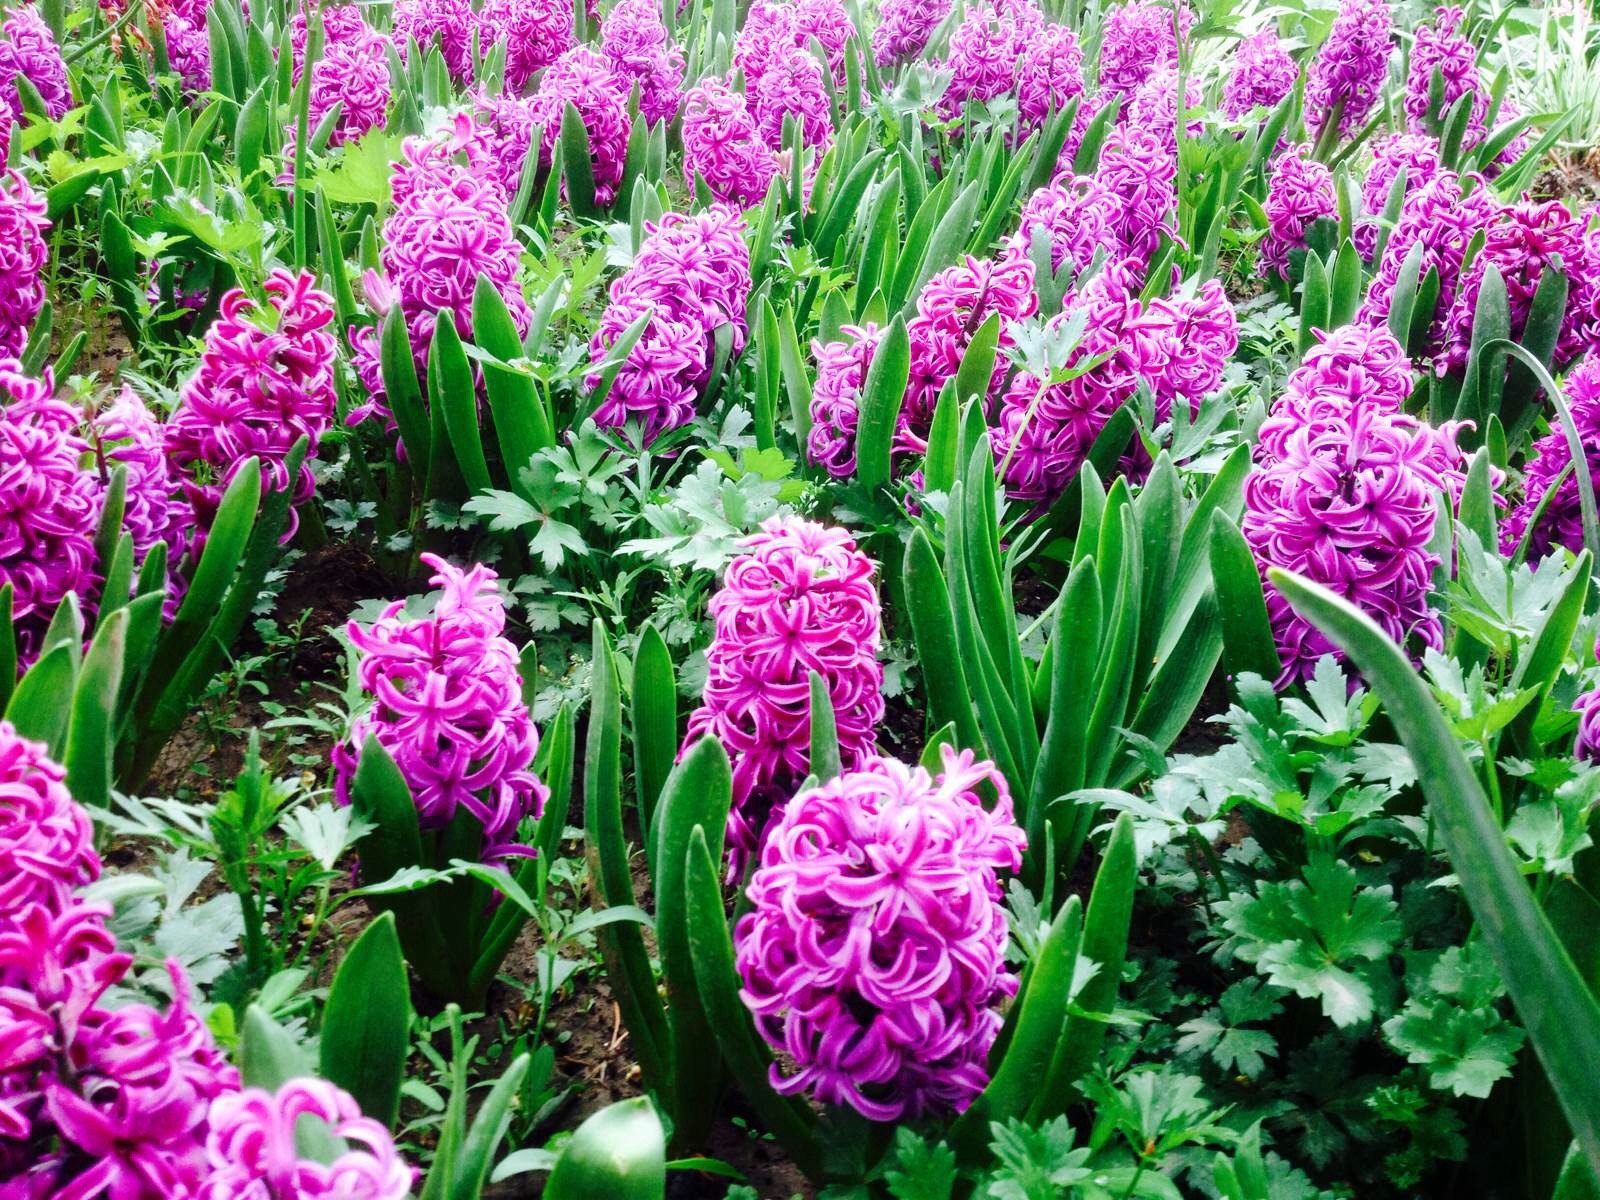 等闲识得东风面,万紫千红总是春 北京香山植物园 春天,各式各样的花儿